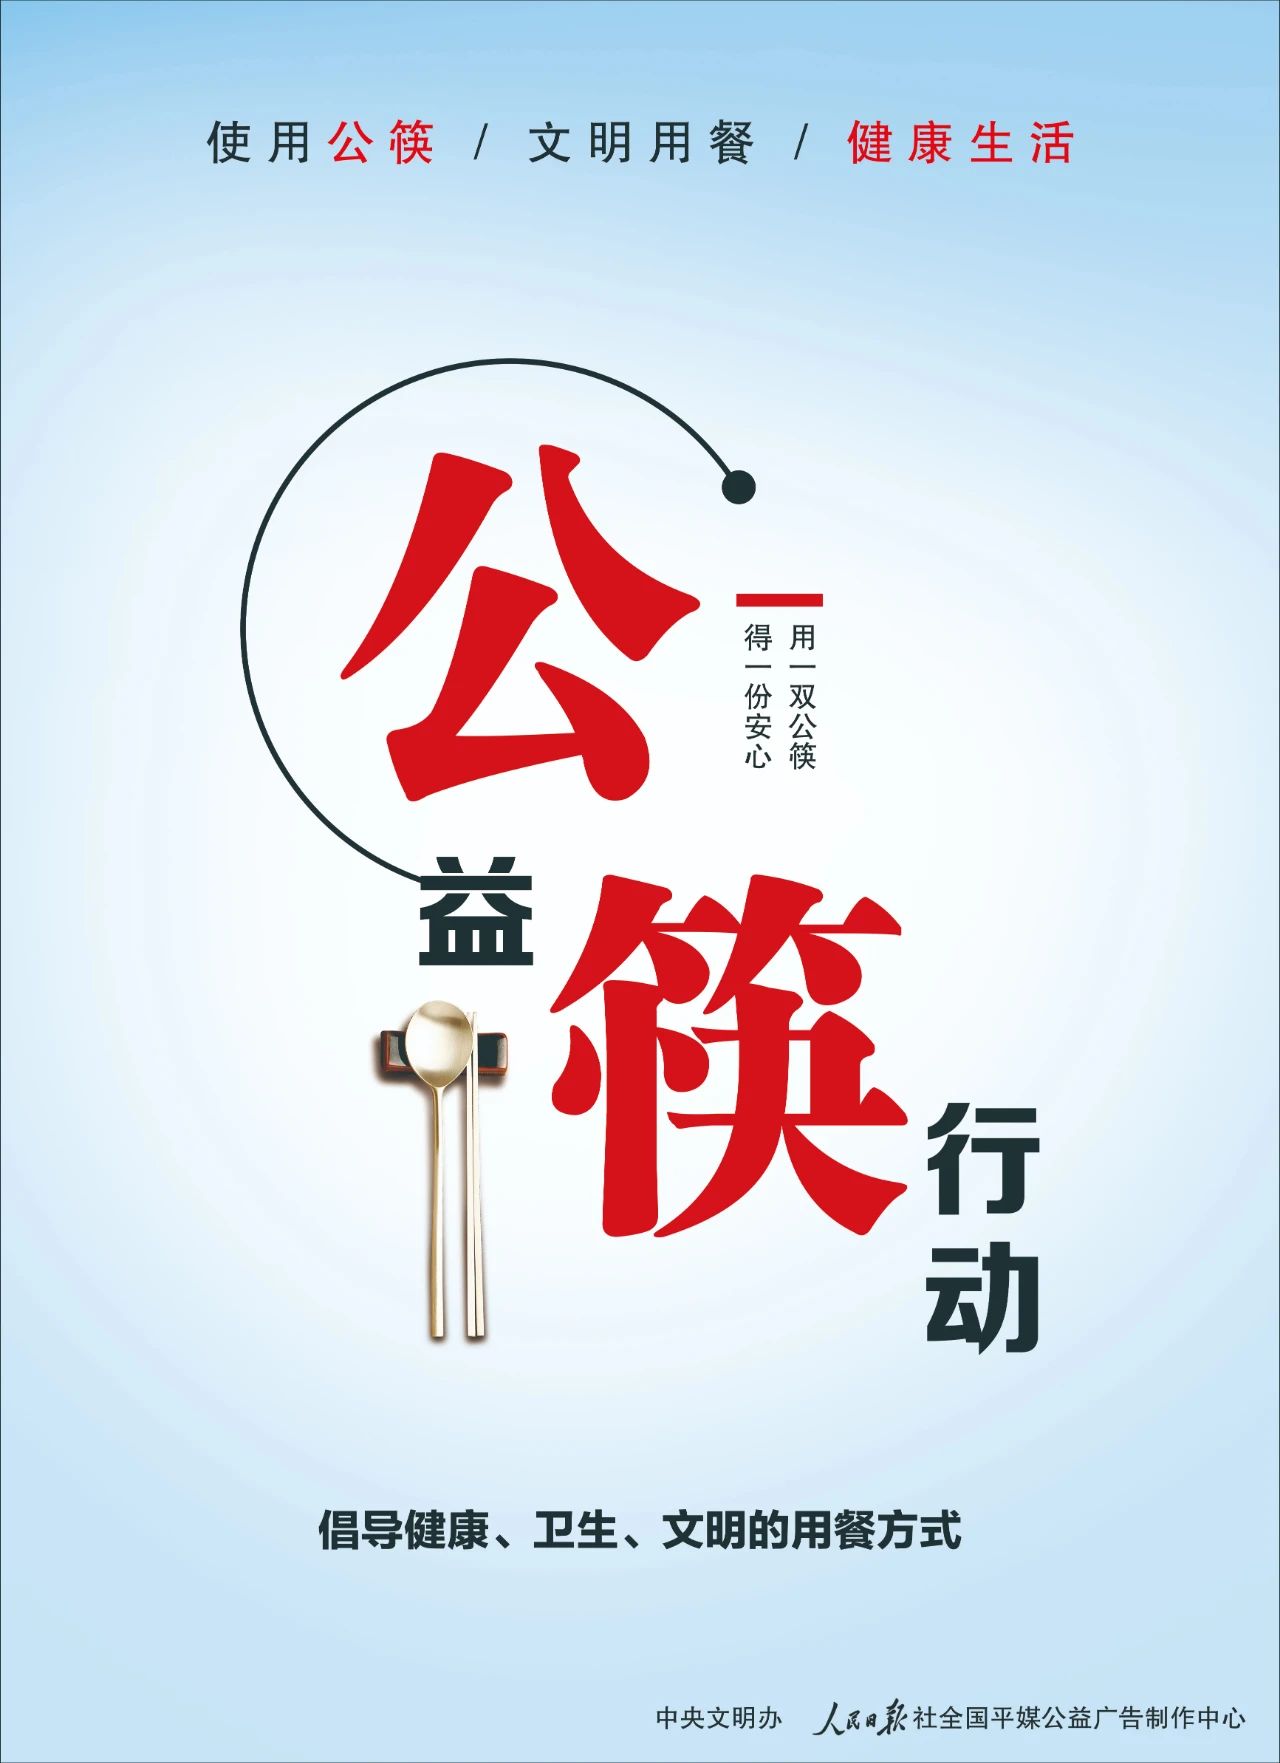 公益广告丨使用公筷 文明用餐 健康生活